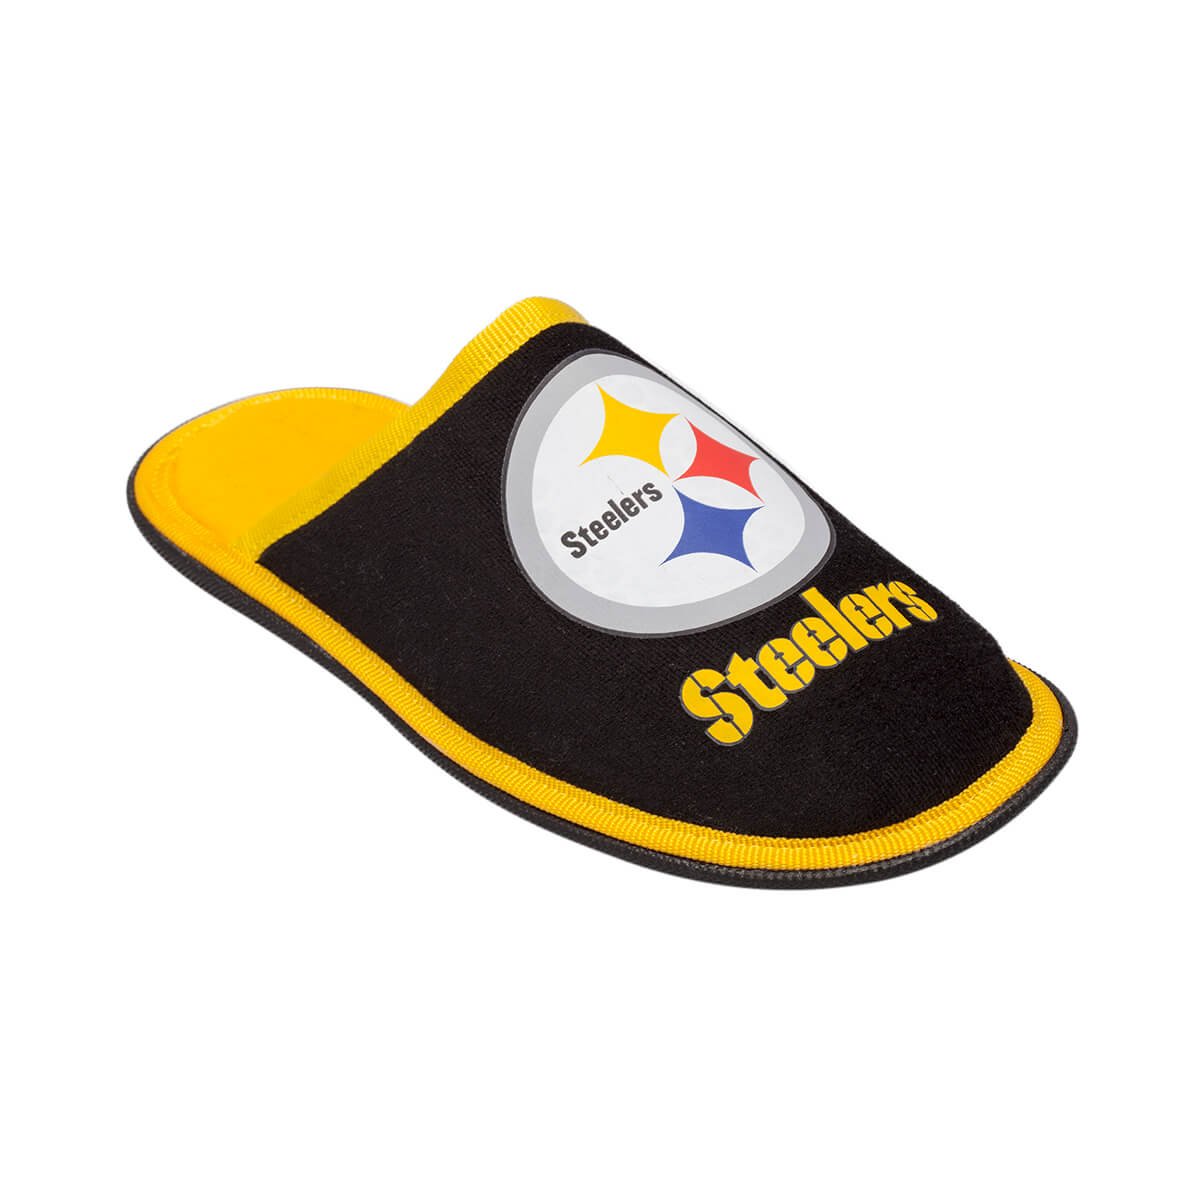 Pantufla Destal Steelers Cabrales 33322-6St N